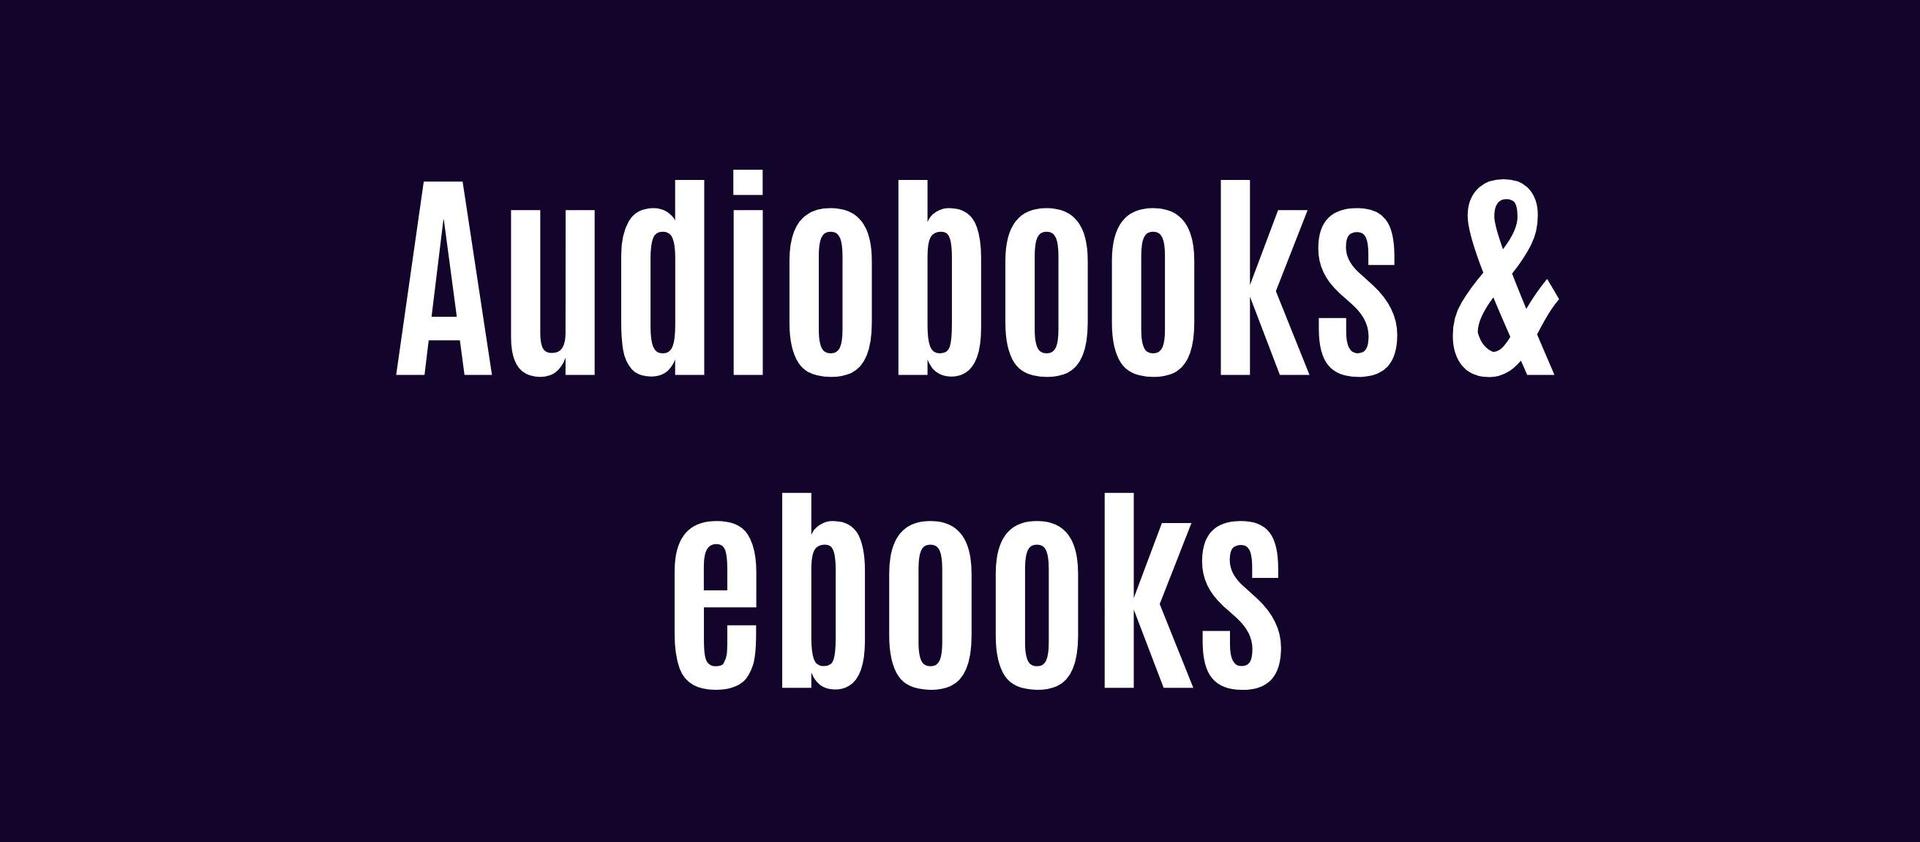 Audiobooks & ebooks